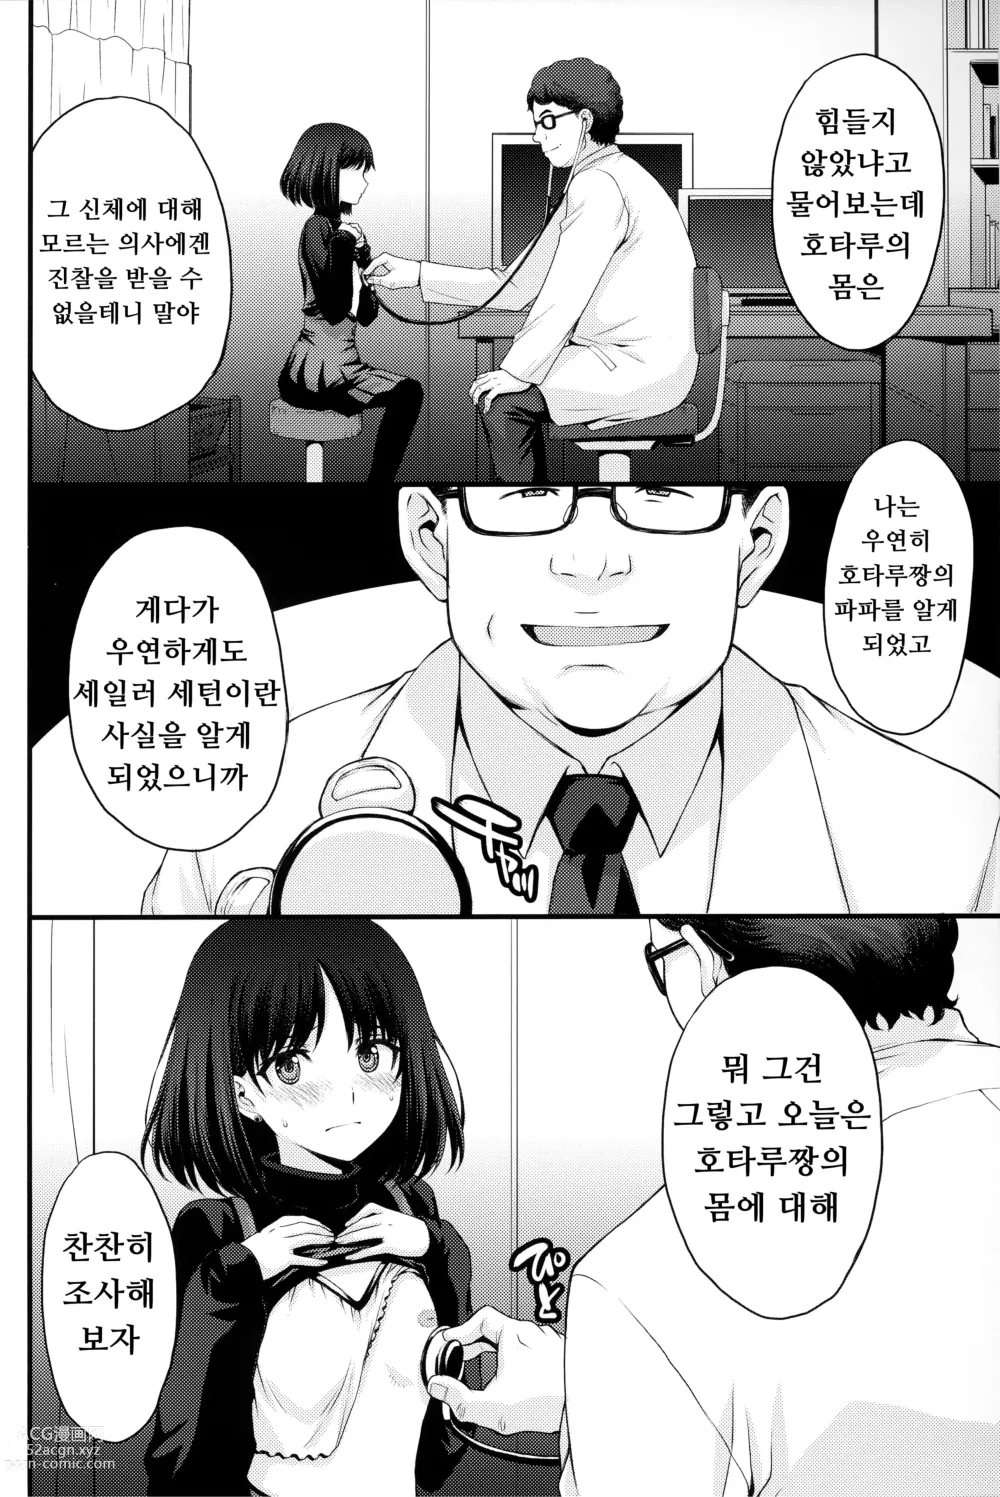 Page 4 of doujinshi 호타루의 의사선생님 놀이